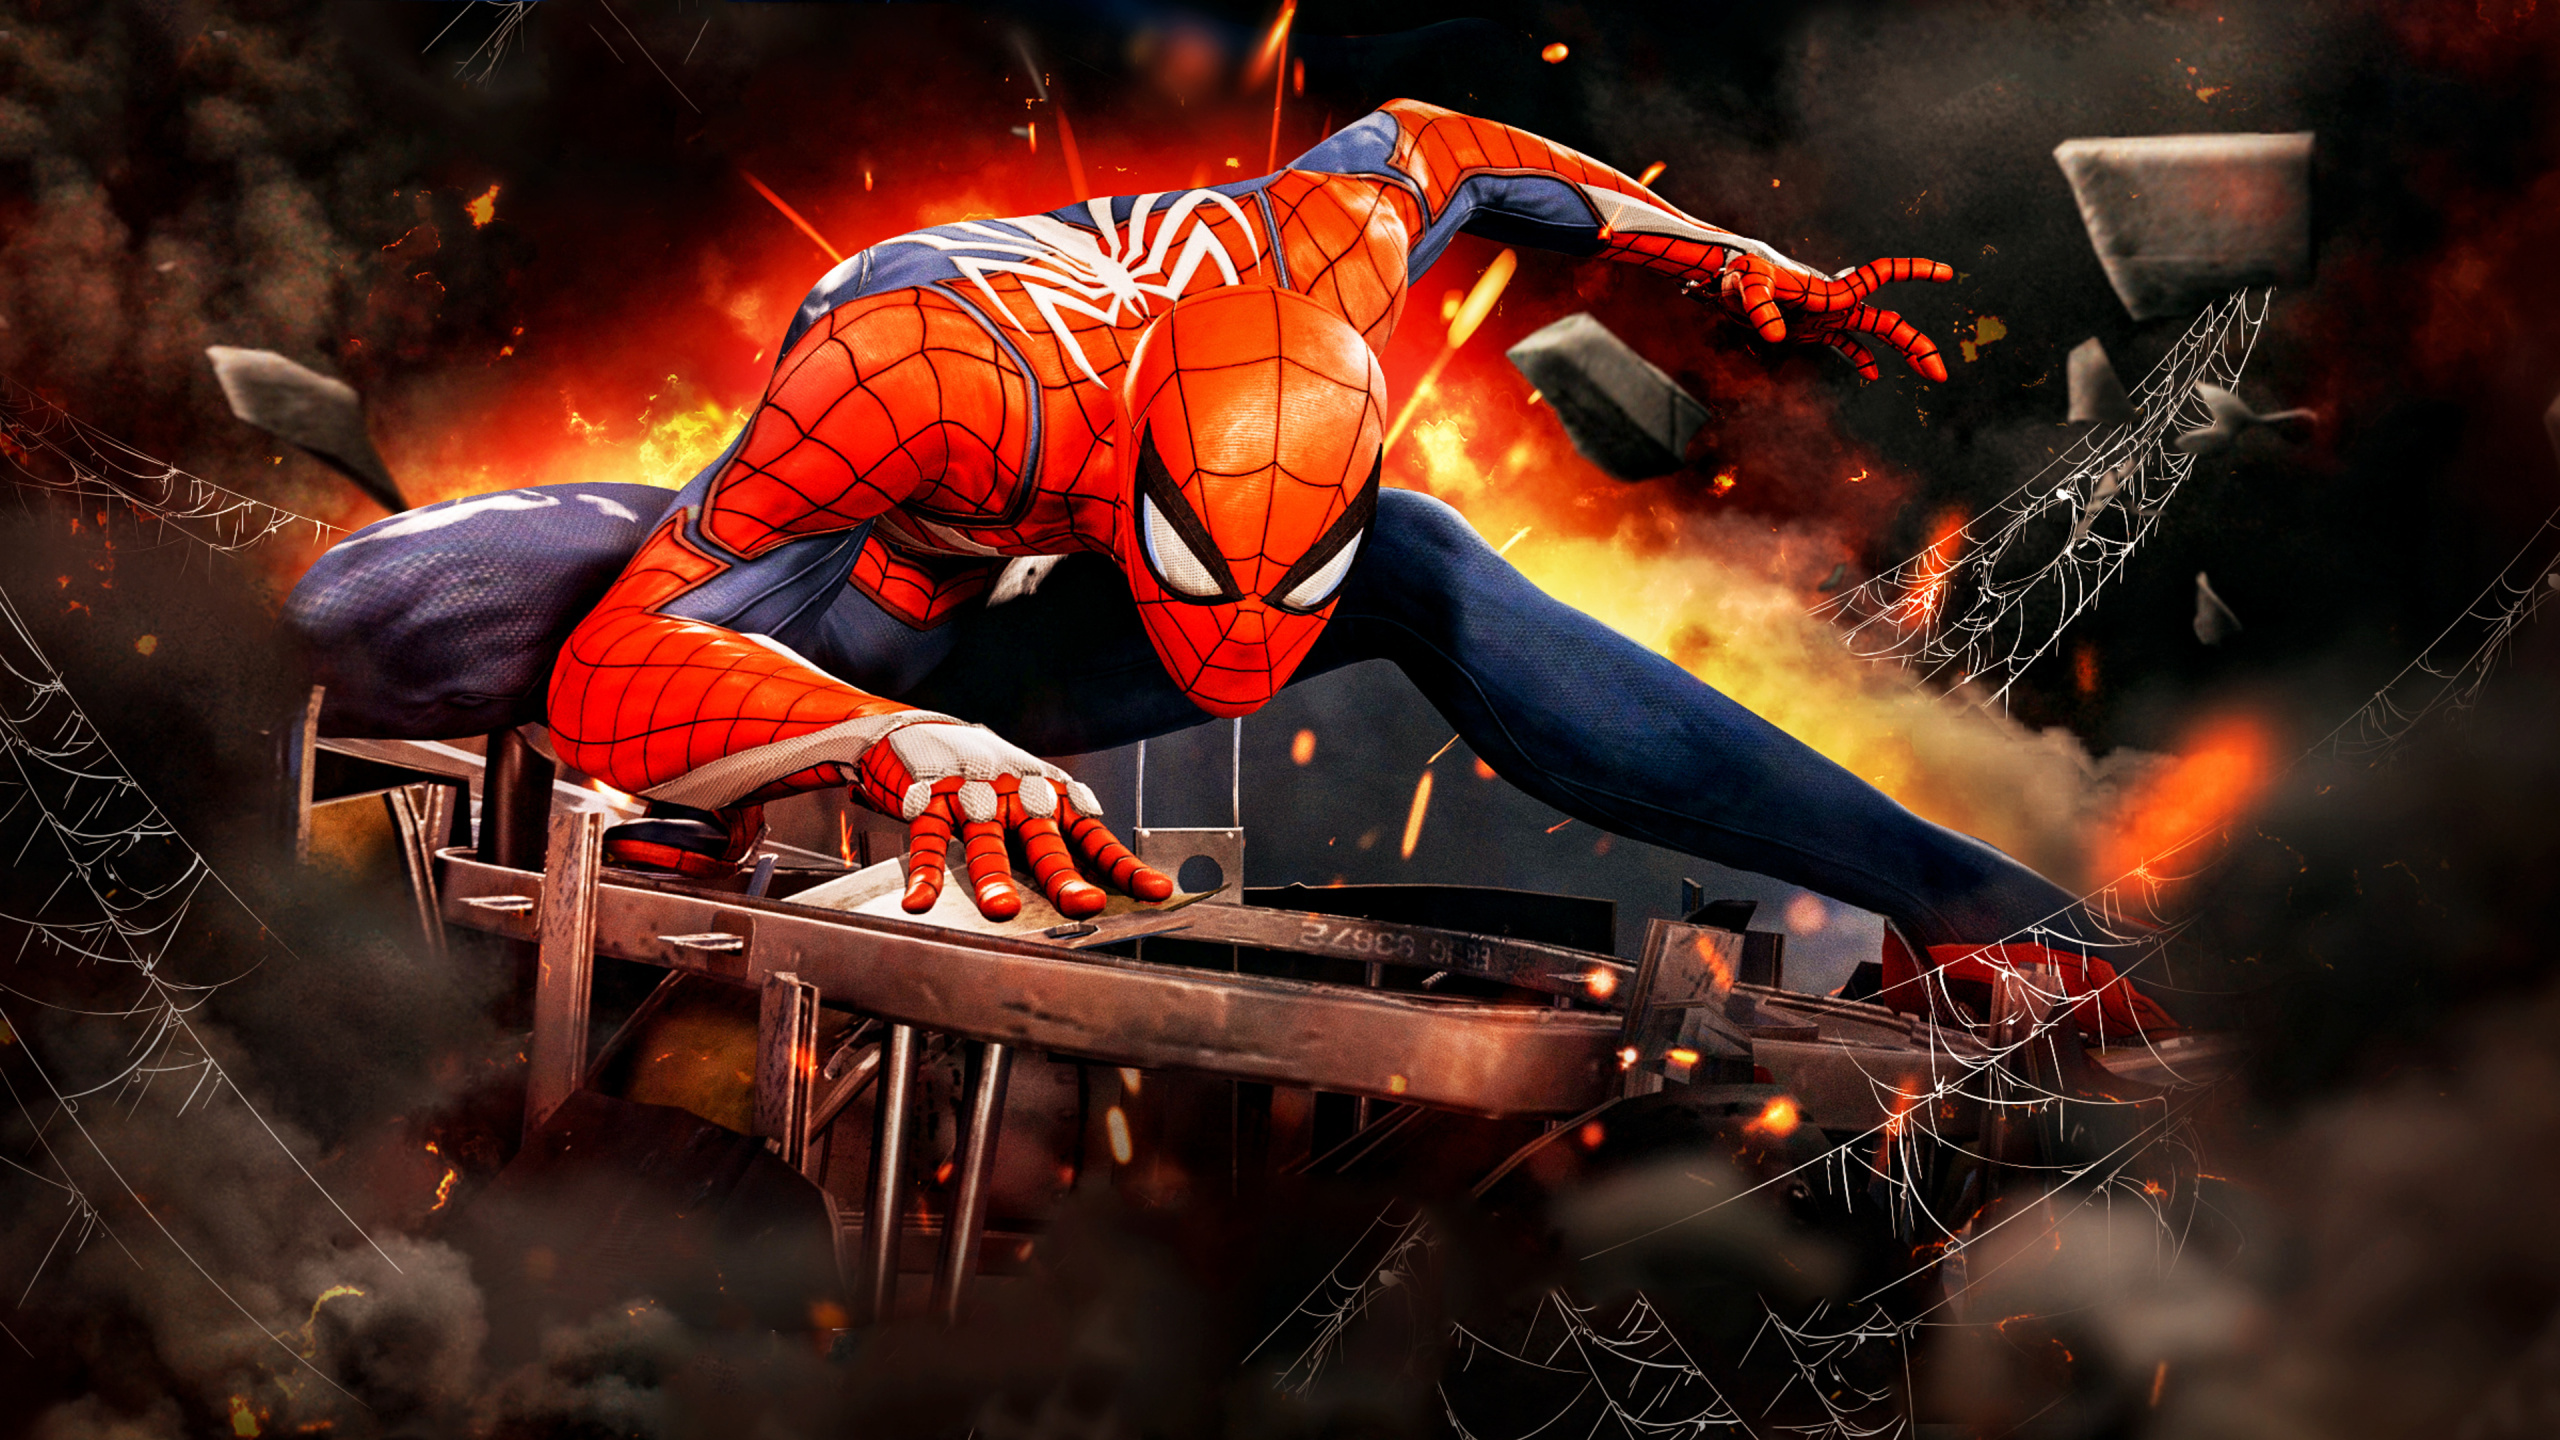 Spider-man, Superhero, pc Game, Movie, Games. Wallpaper in 2560x1440 Resolution